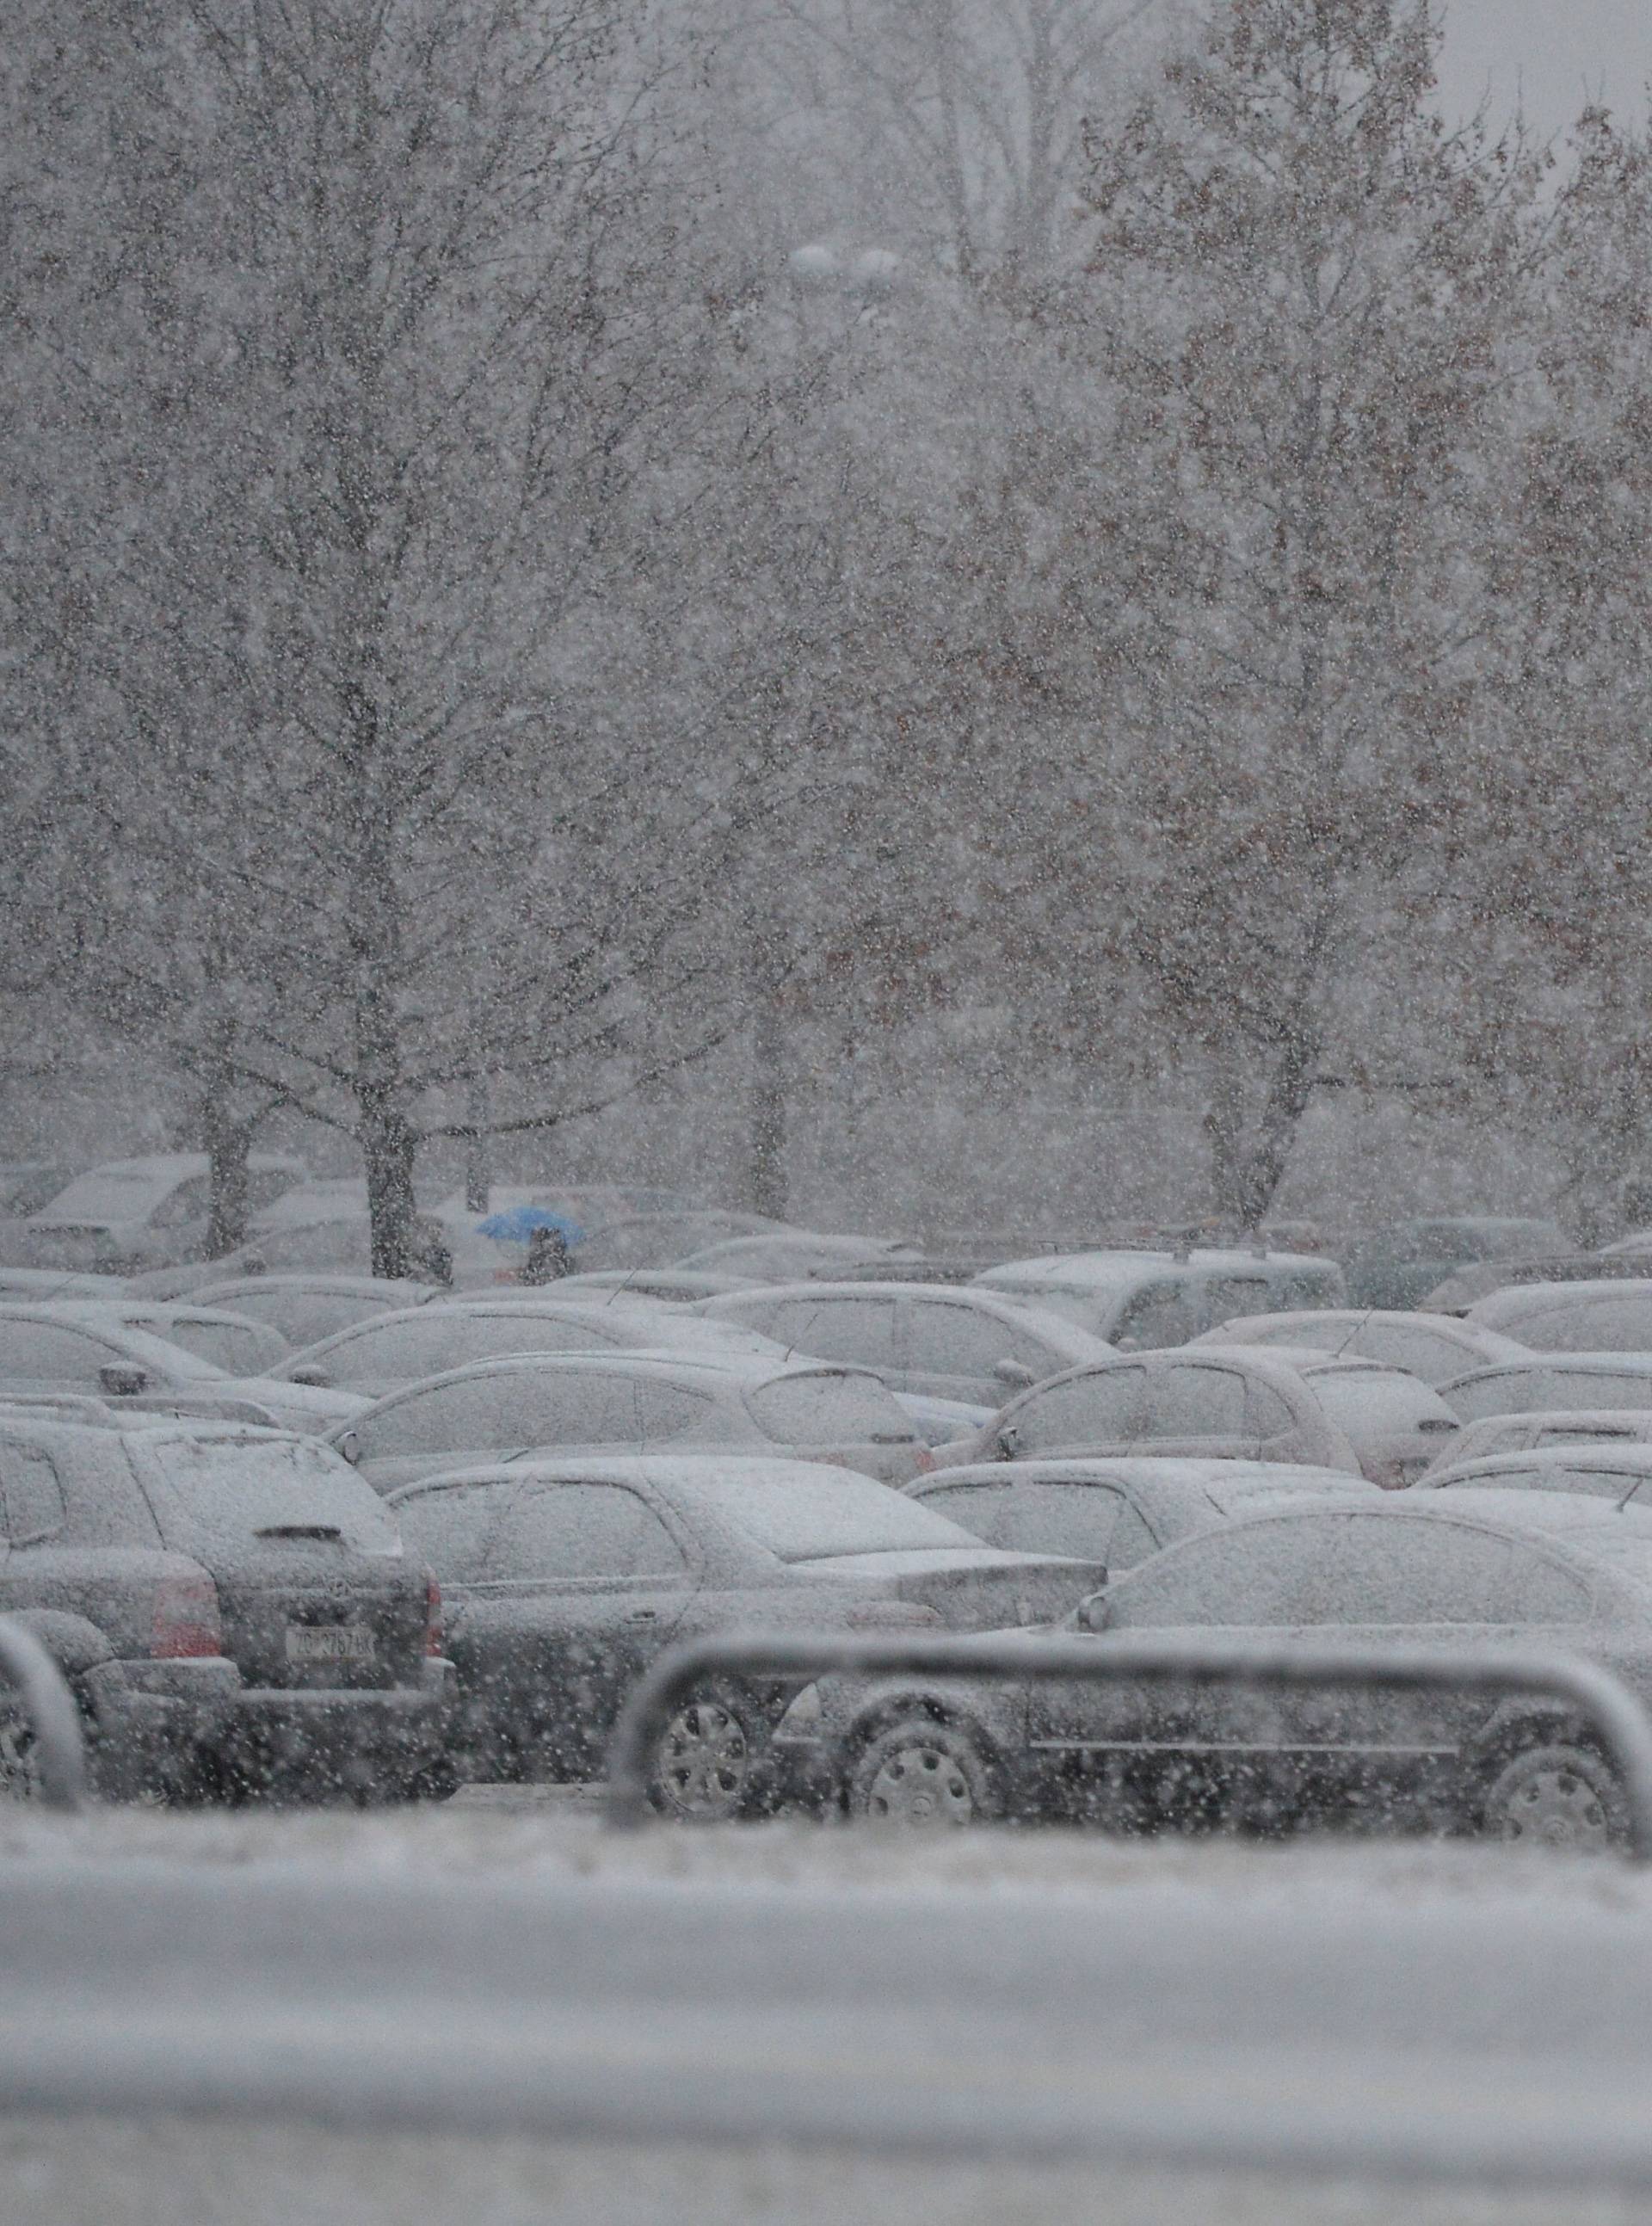 Ovo je sedam ključnih savjeta za vožnju autom po snijegu